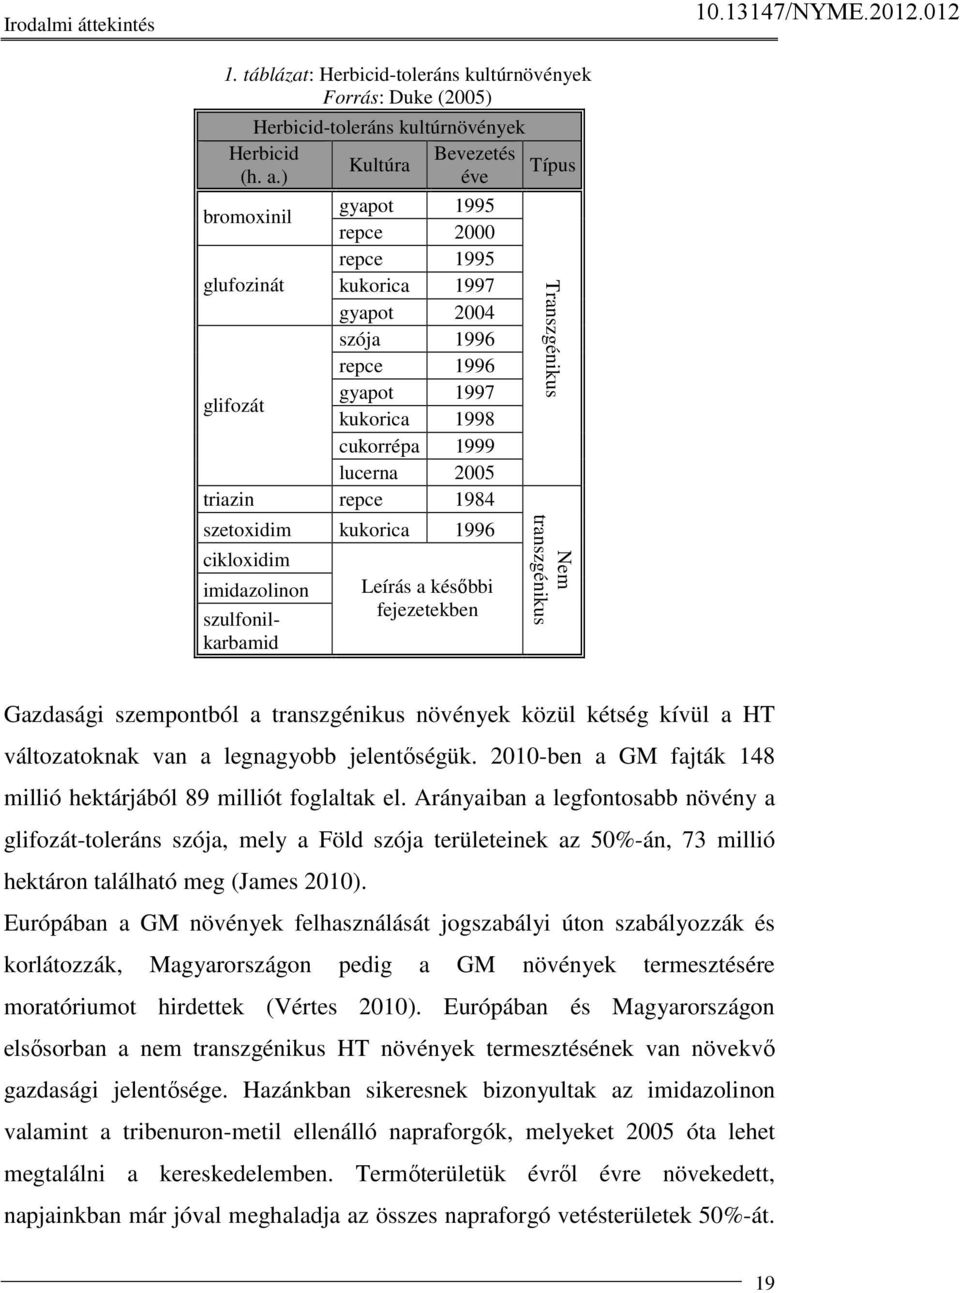 szetoxidim kukorica 1996 cikloxidim imidazolinon szulfonilkarbamid Leírás a késıbbi fejezetekben Típus Transzgénikus Nem transzgénikus Gazdasági szempontból a transzgénikus növények közül kétség